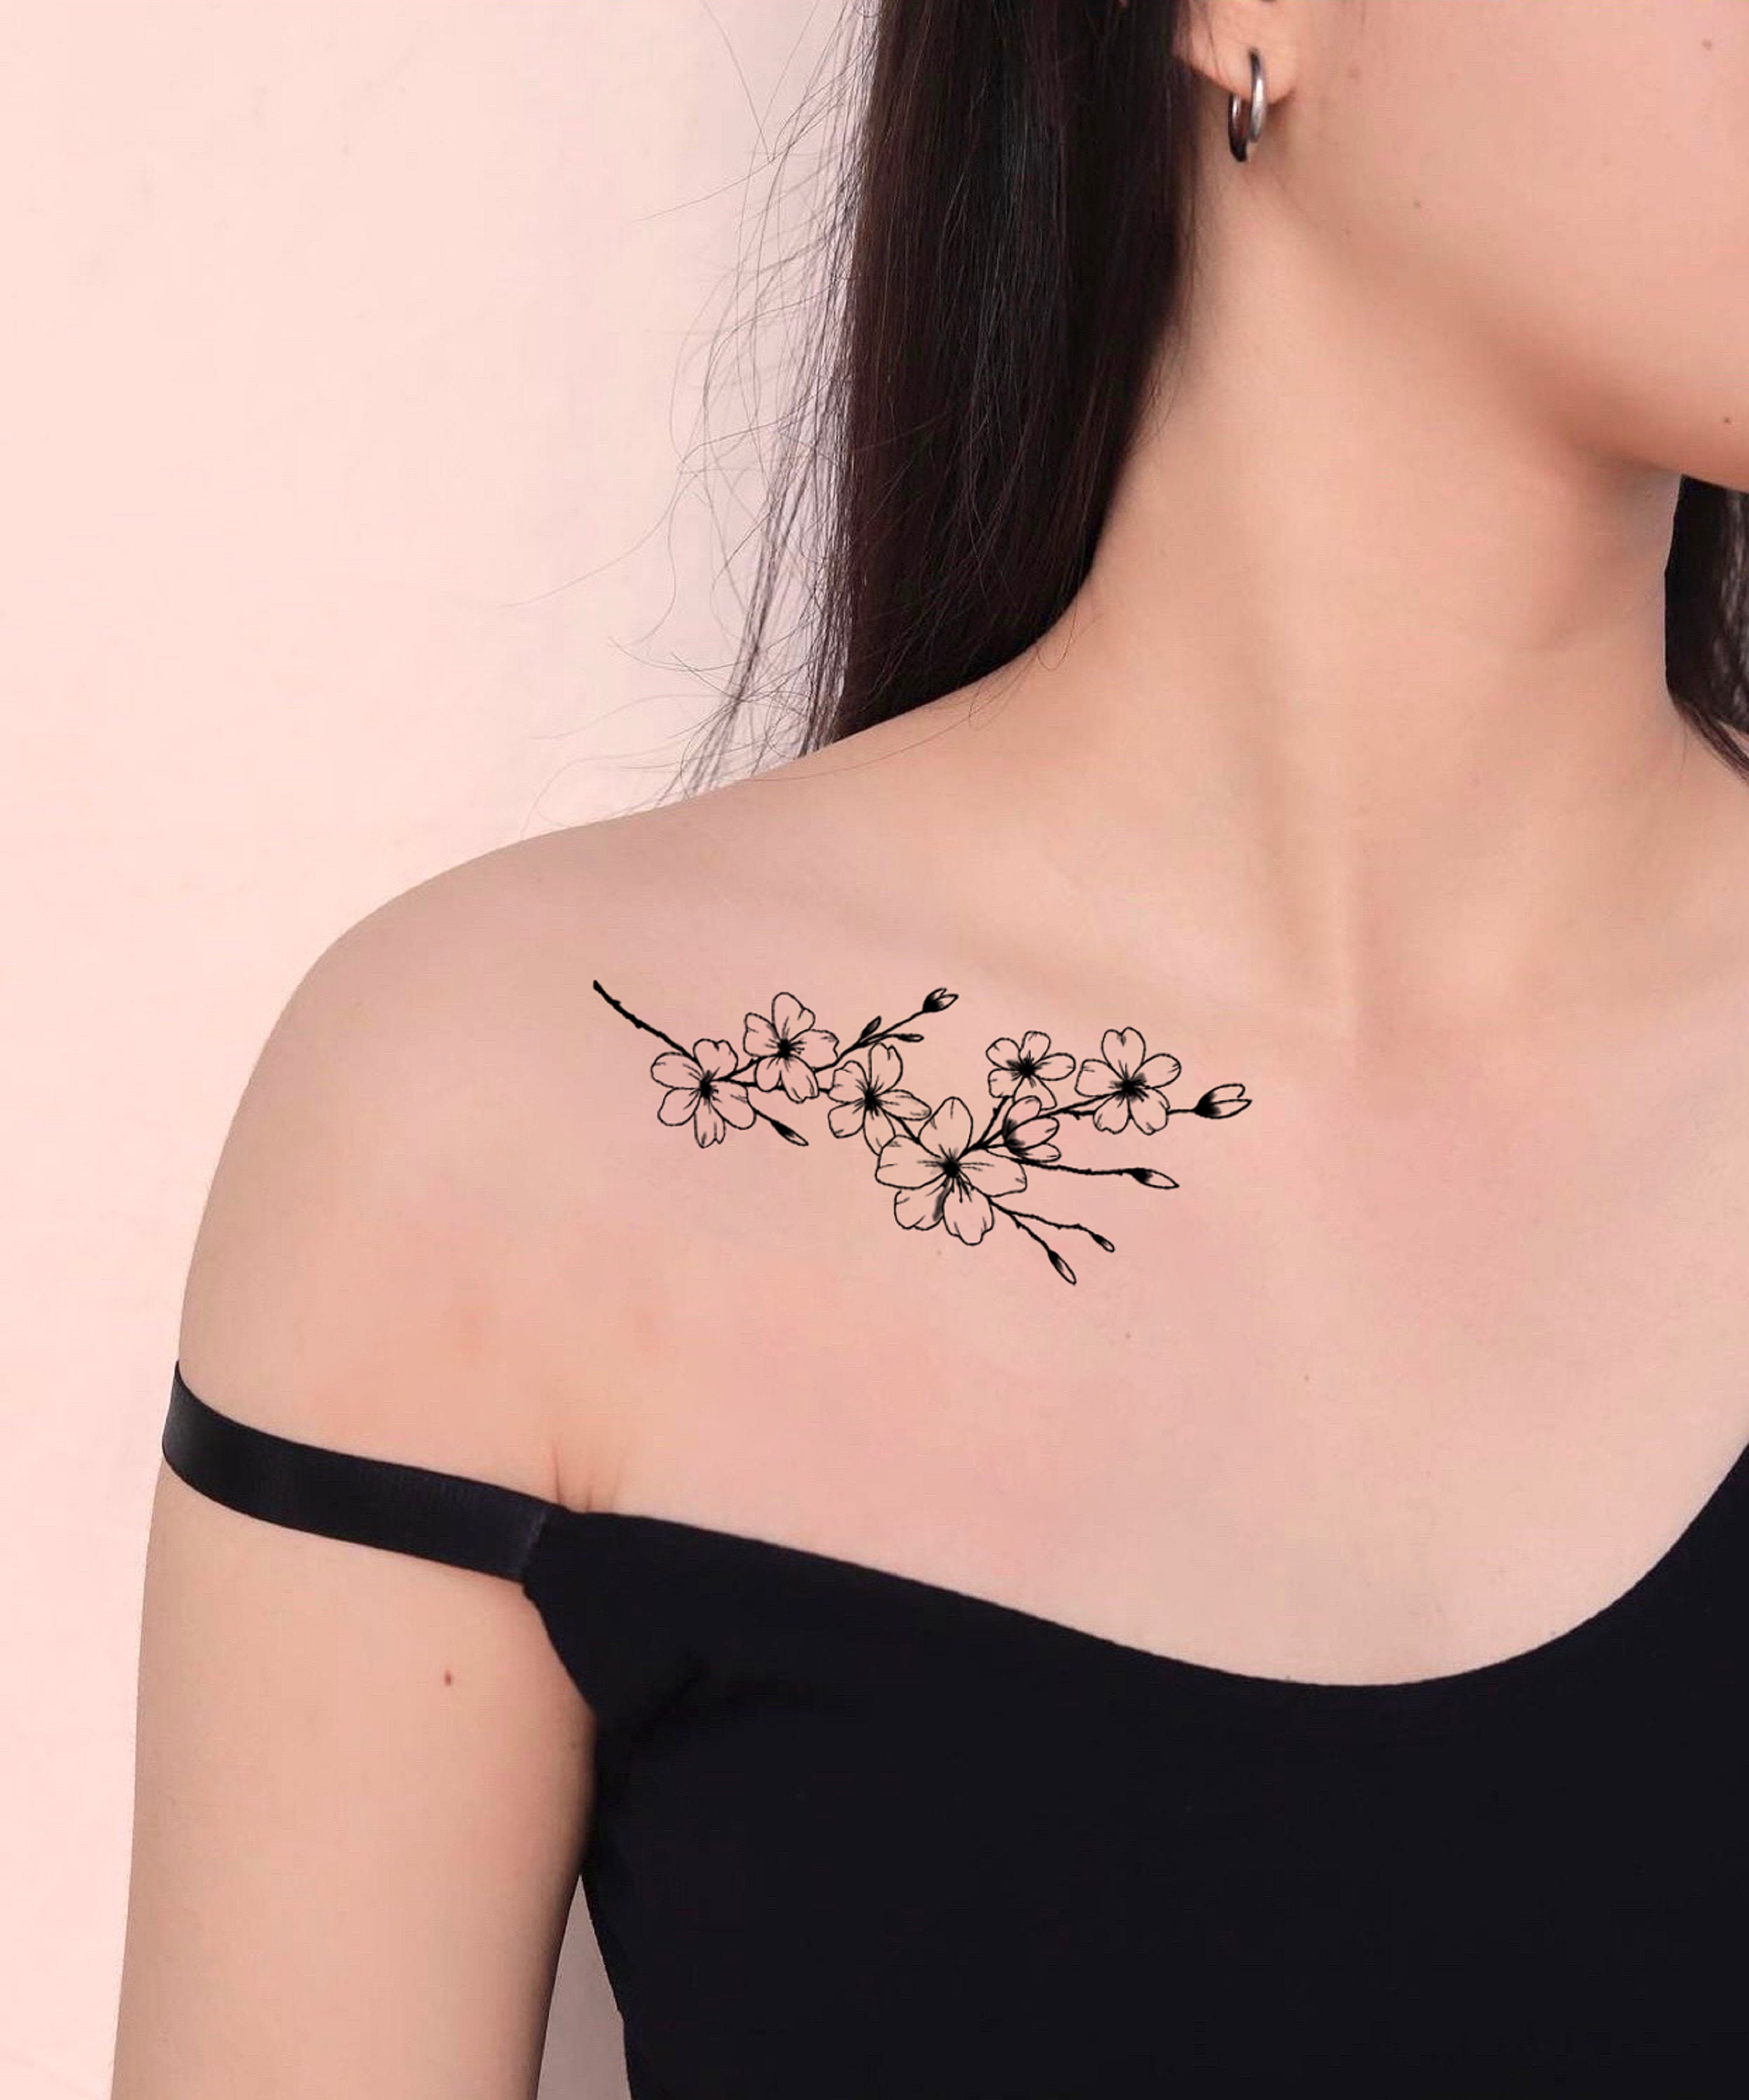 Top 59 Best Dogwood Flower Tattoo Ideas  2021 Inspiration Guide